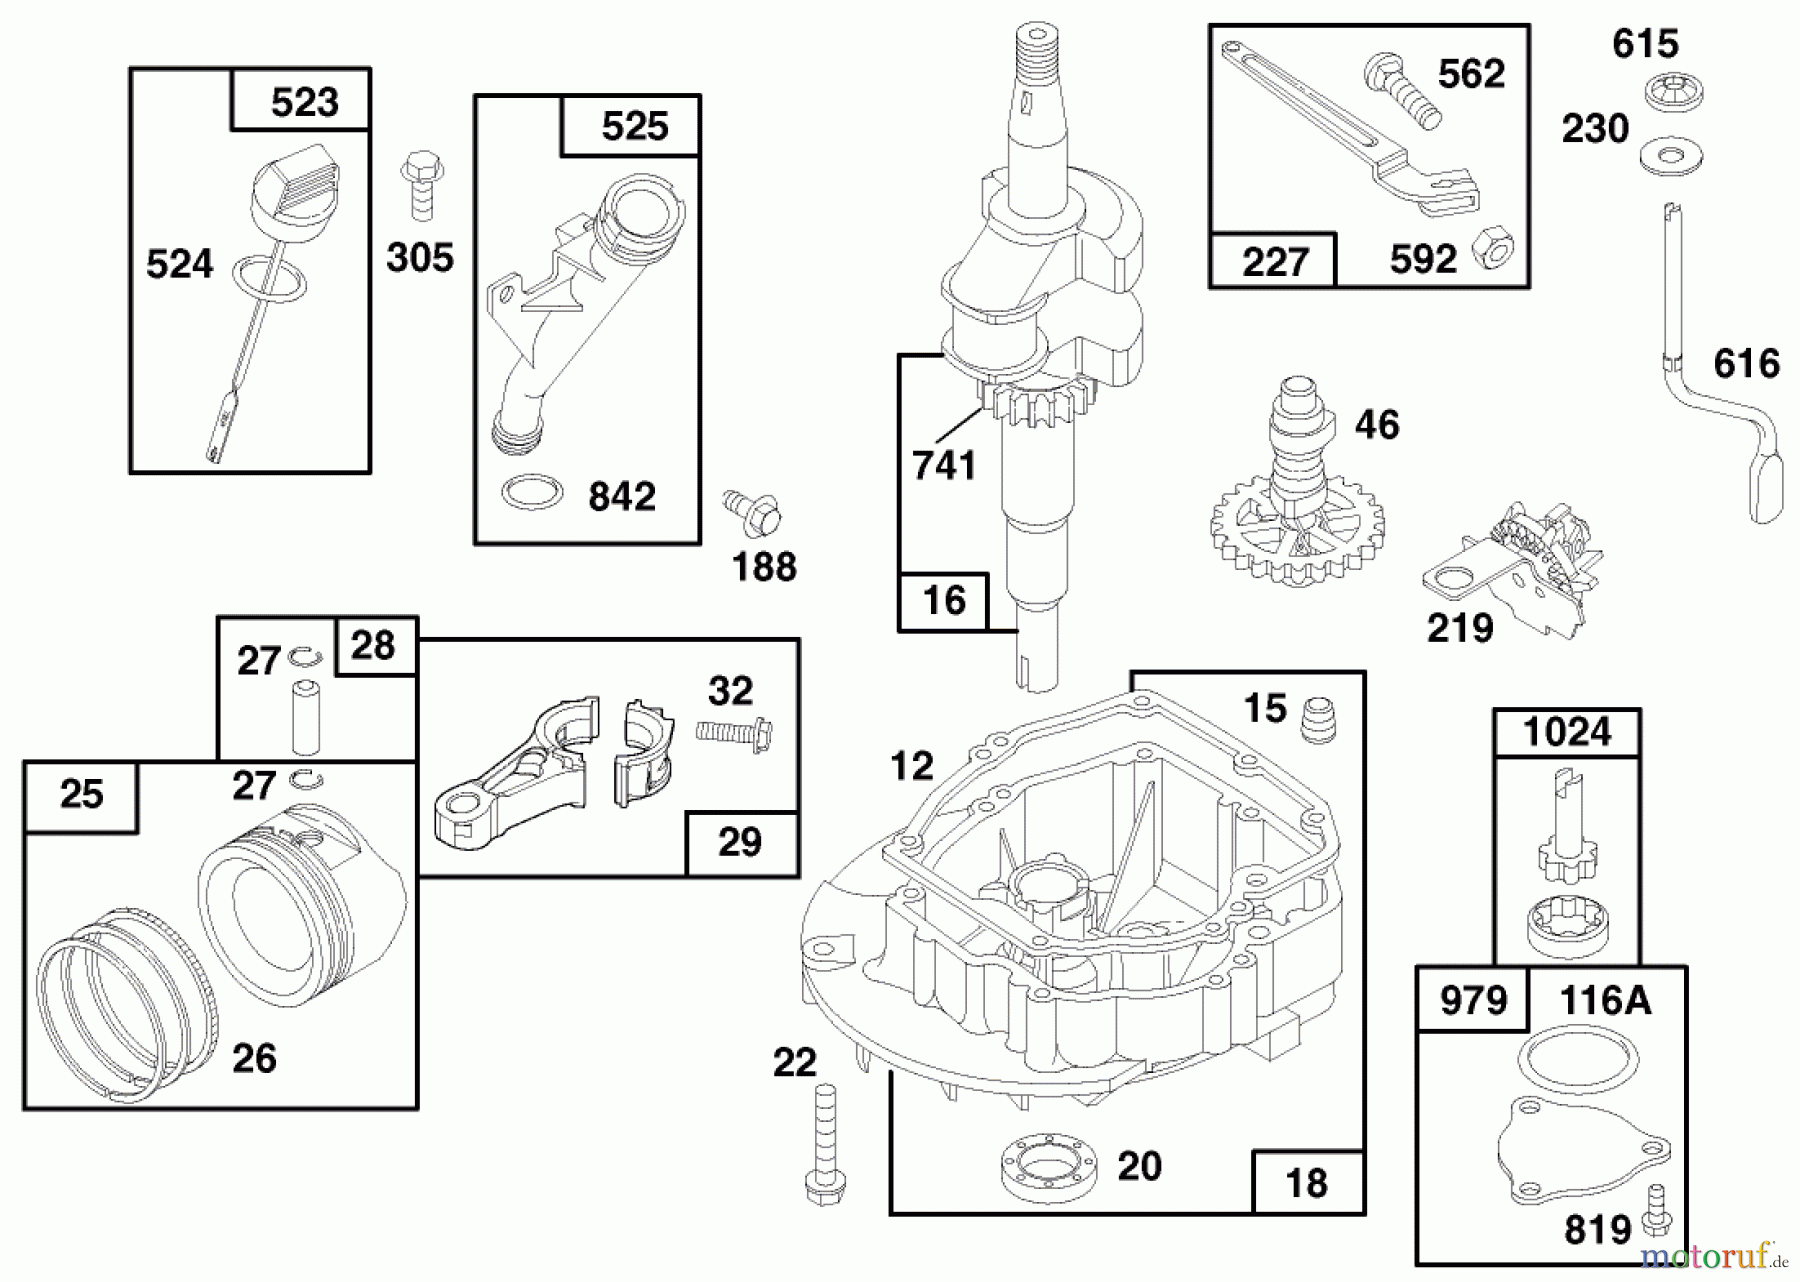  Toro Neu Mowers, Walk-Behind Seite 1 20475 - Toro Lawnmower, 1996 (6900001-6999999) ENGINE GTS 150 (MODEL NO. 20475 ONLY) #2